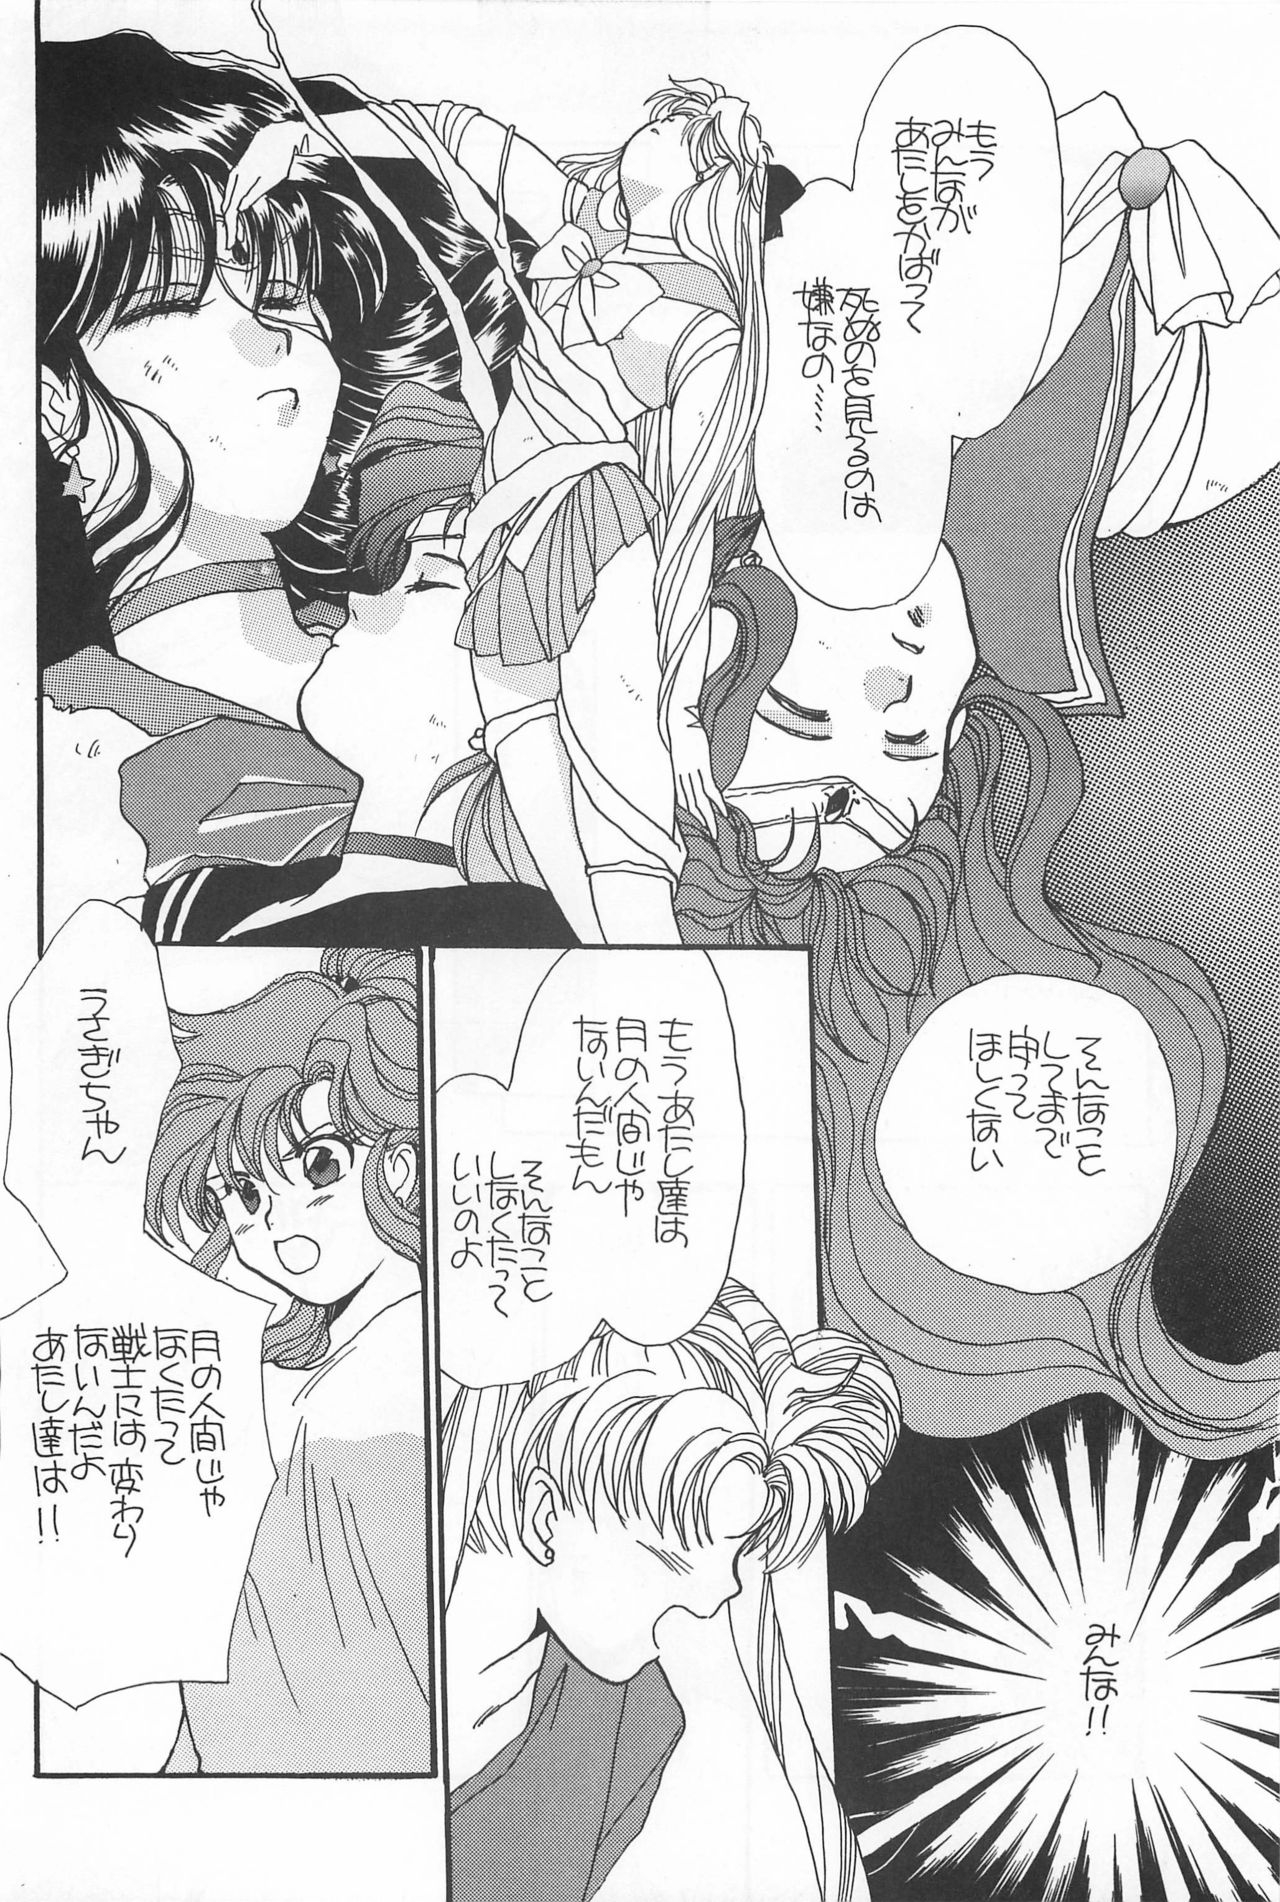 [Hello World (Muttri Moony)] Kaze no You ni Yume no You ni - Sailor Moon Collection (Sailor Moon) 159